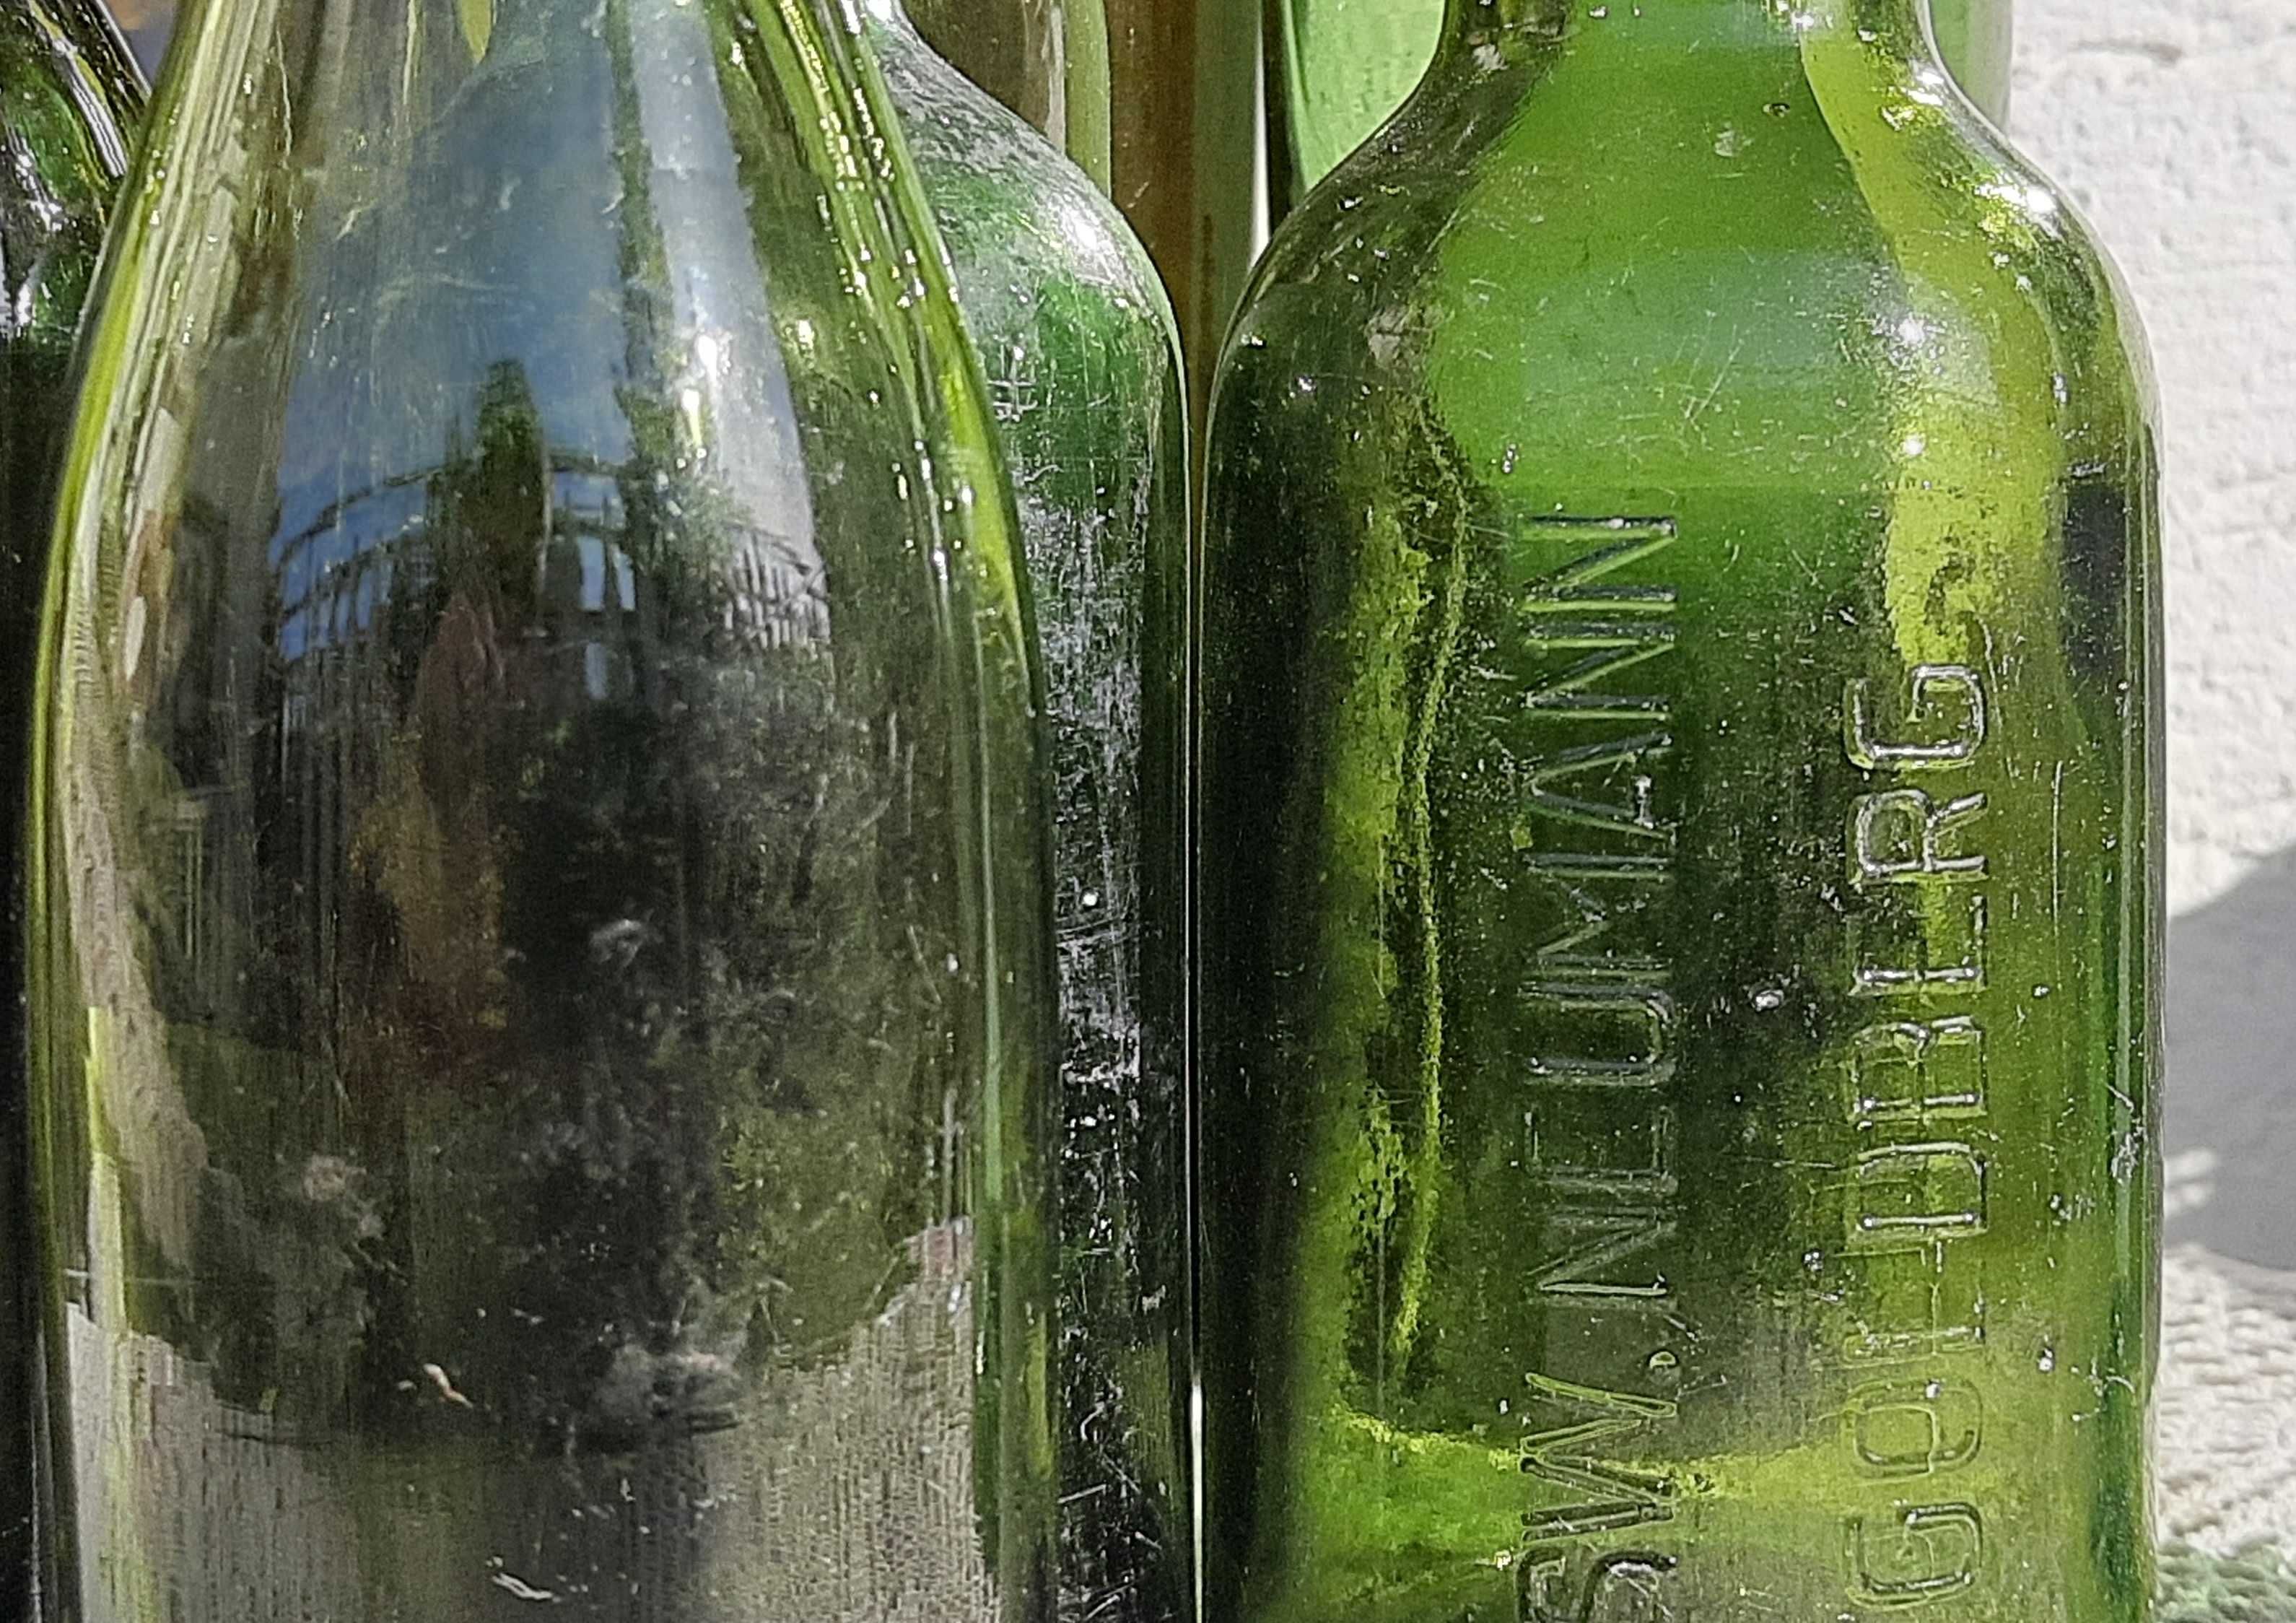 Sprzedam komplet starych zielonych butelek